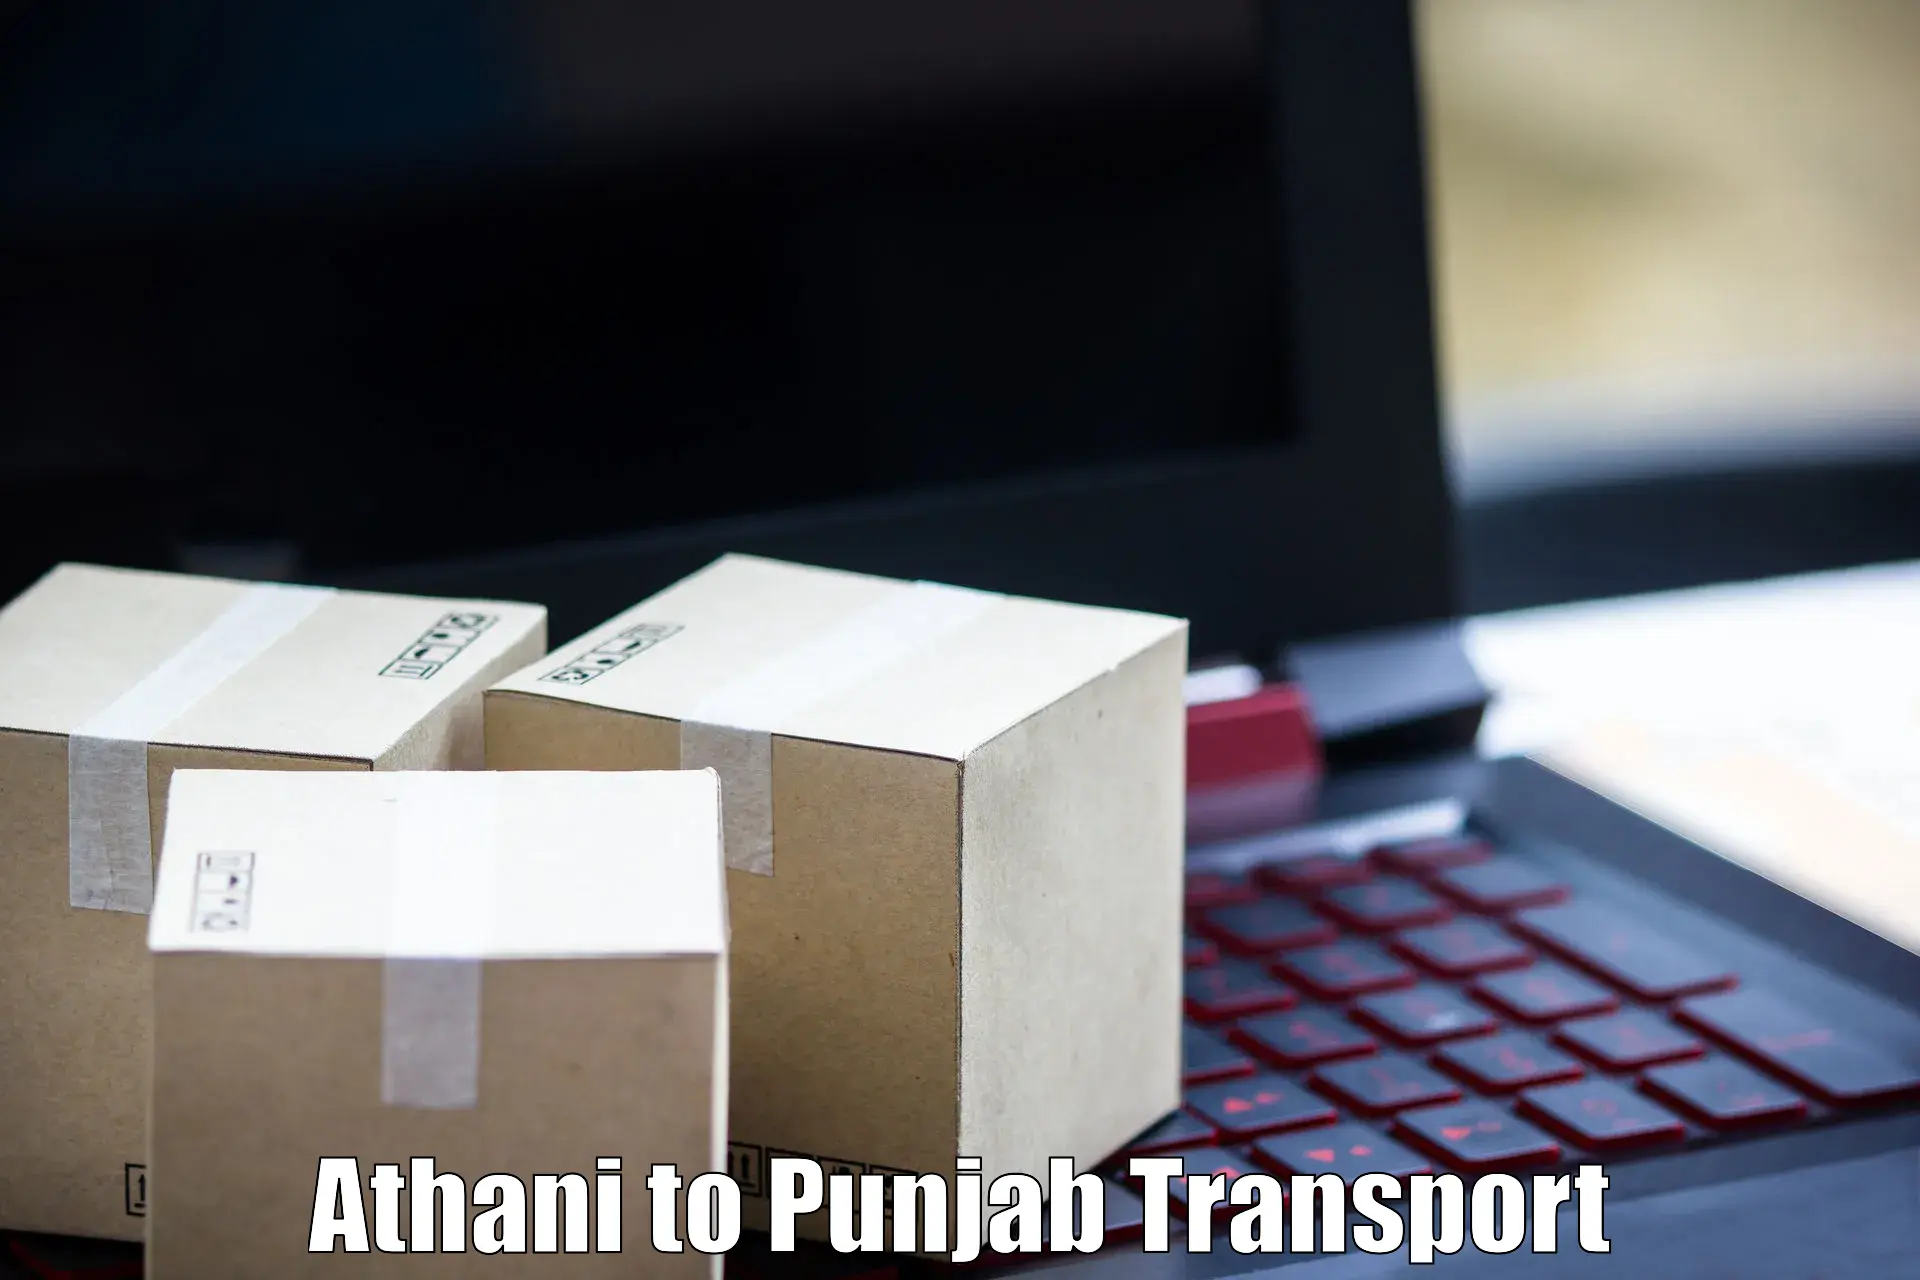 Online transport service Athani to Jalandhar